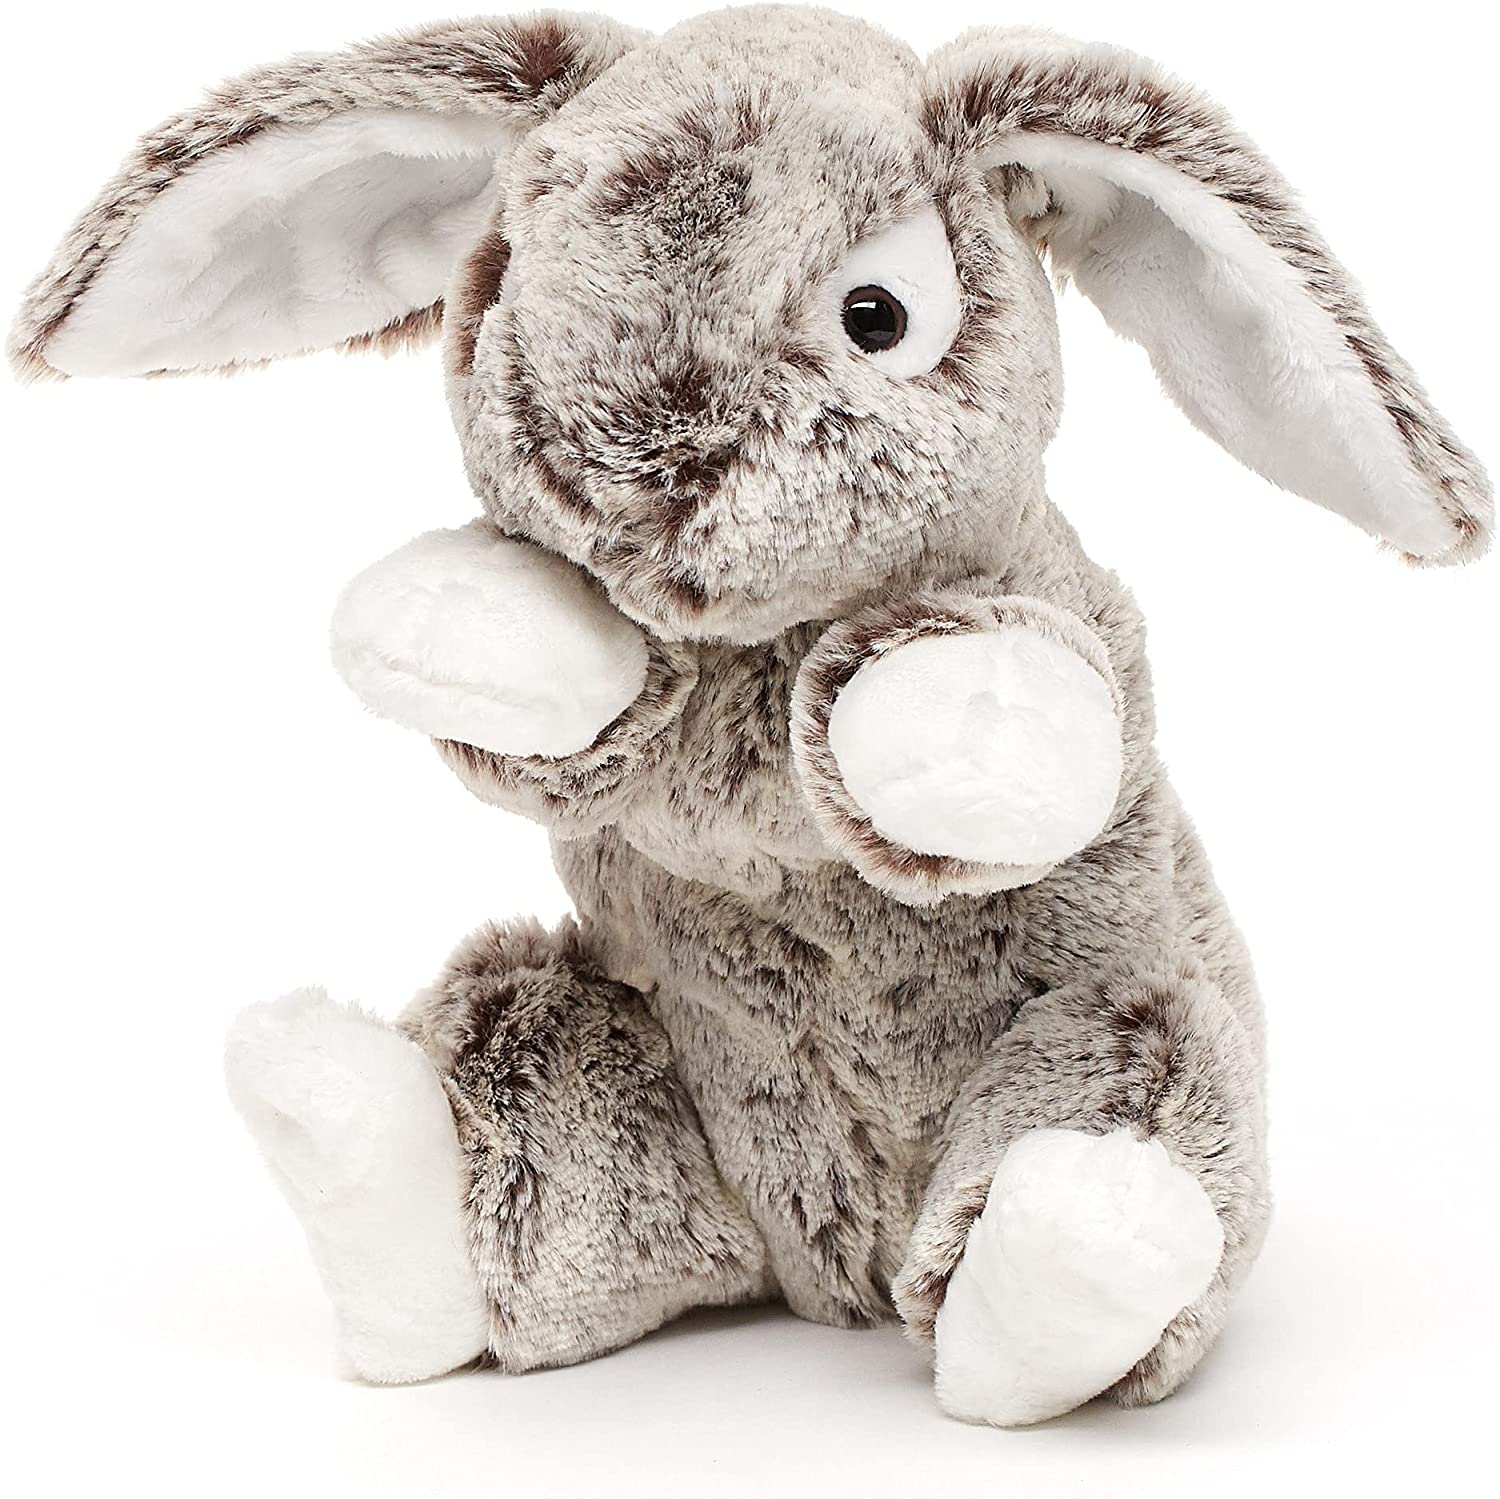 Uni-Toys - Häschen mit Schlappohren (dunkelbraun-meliert), superweich - 22 cm (Höhe) - Hase, Waldtier - Plüschtier, Kuscheltier